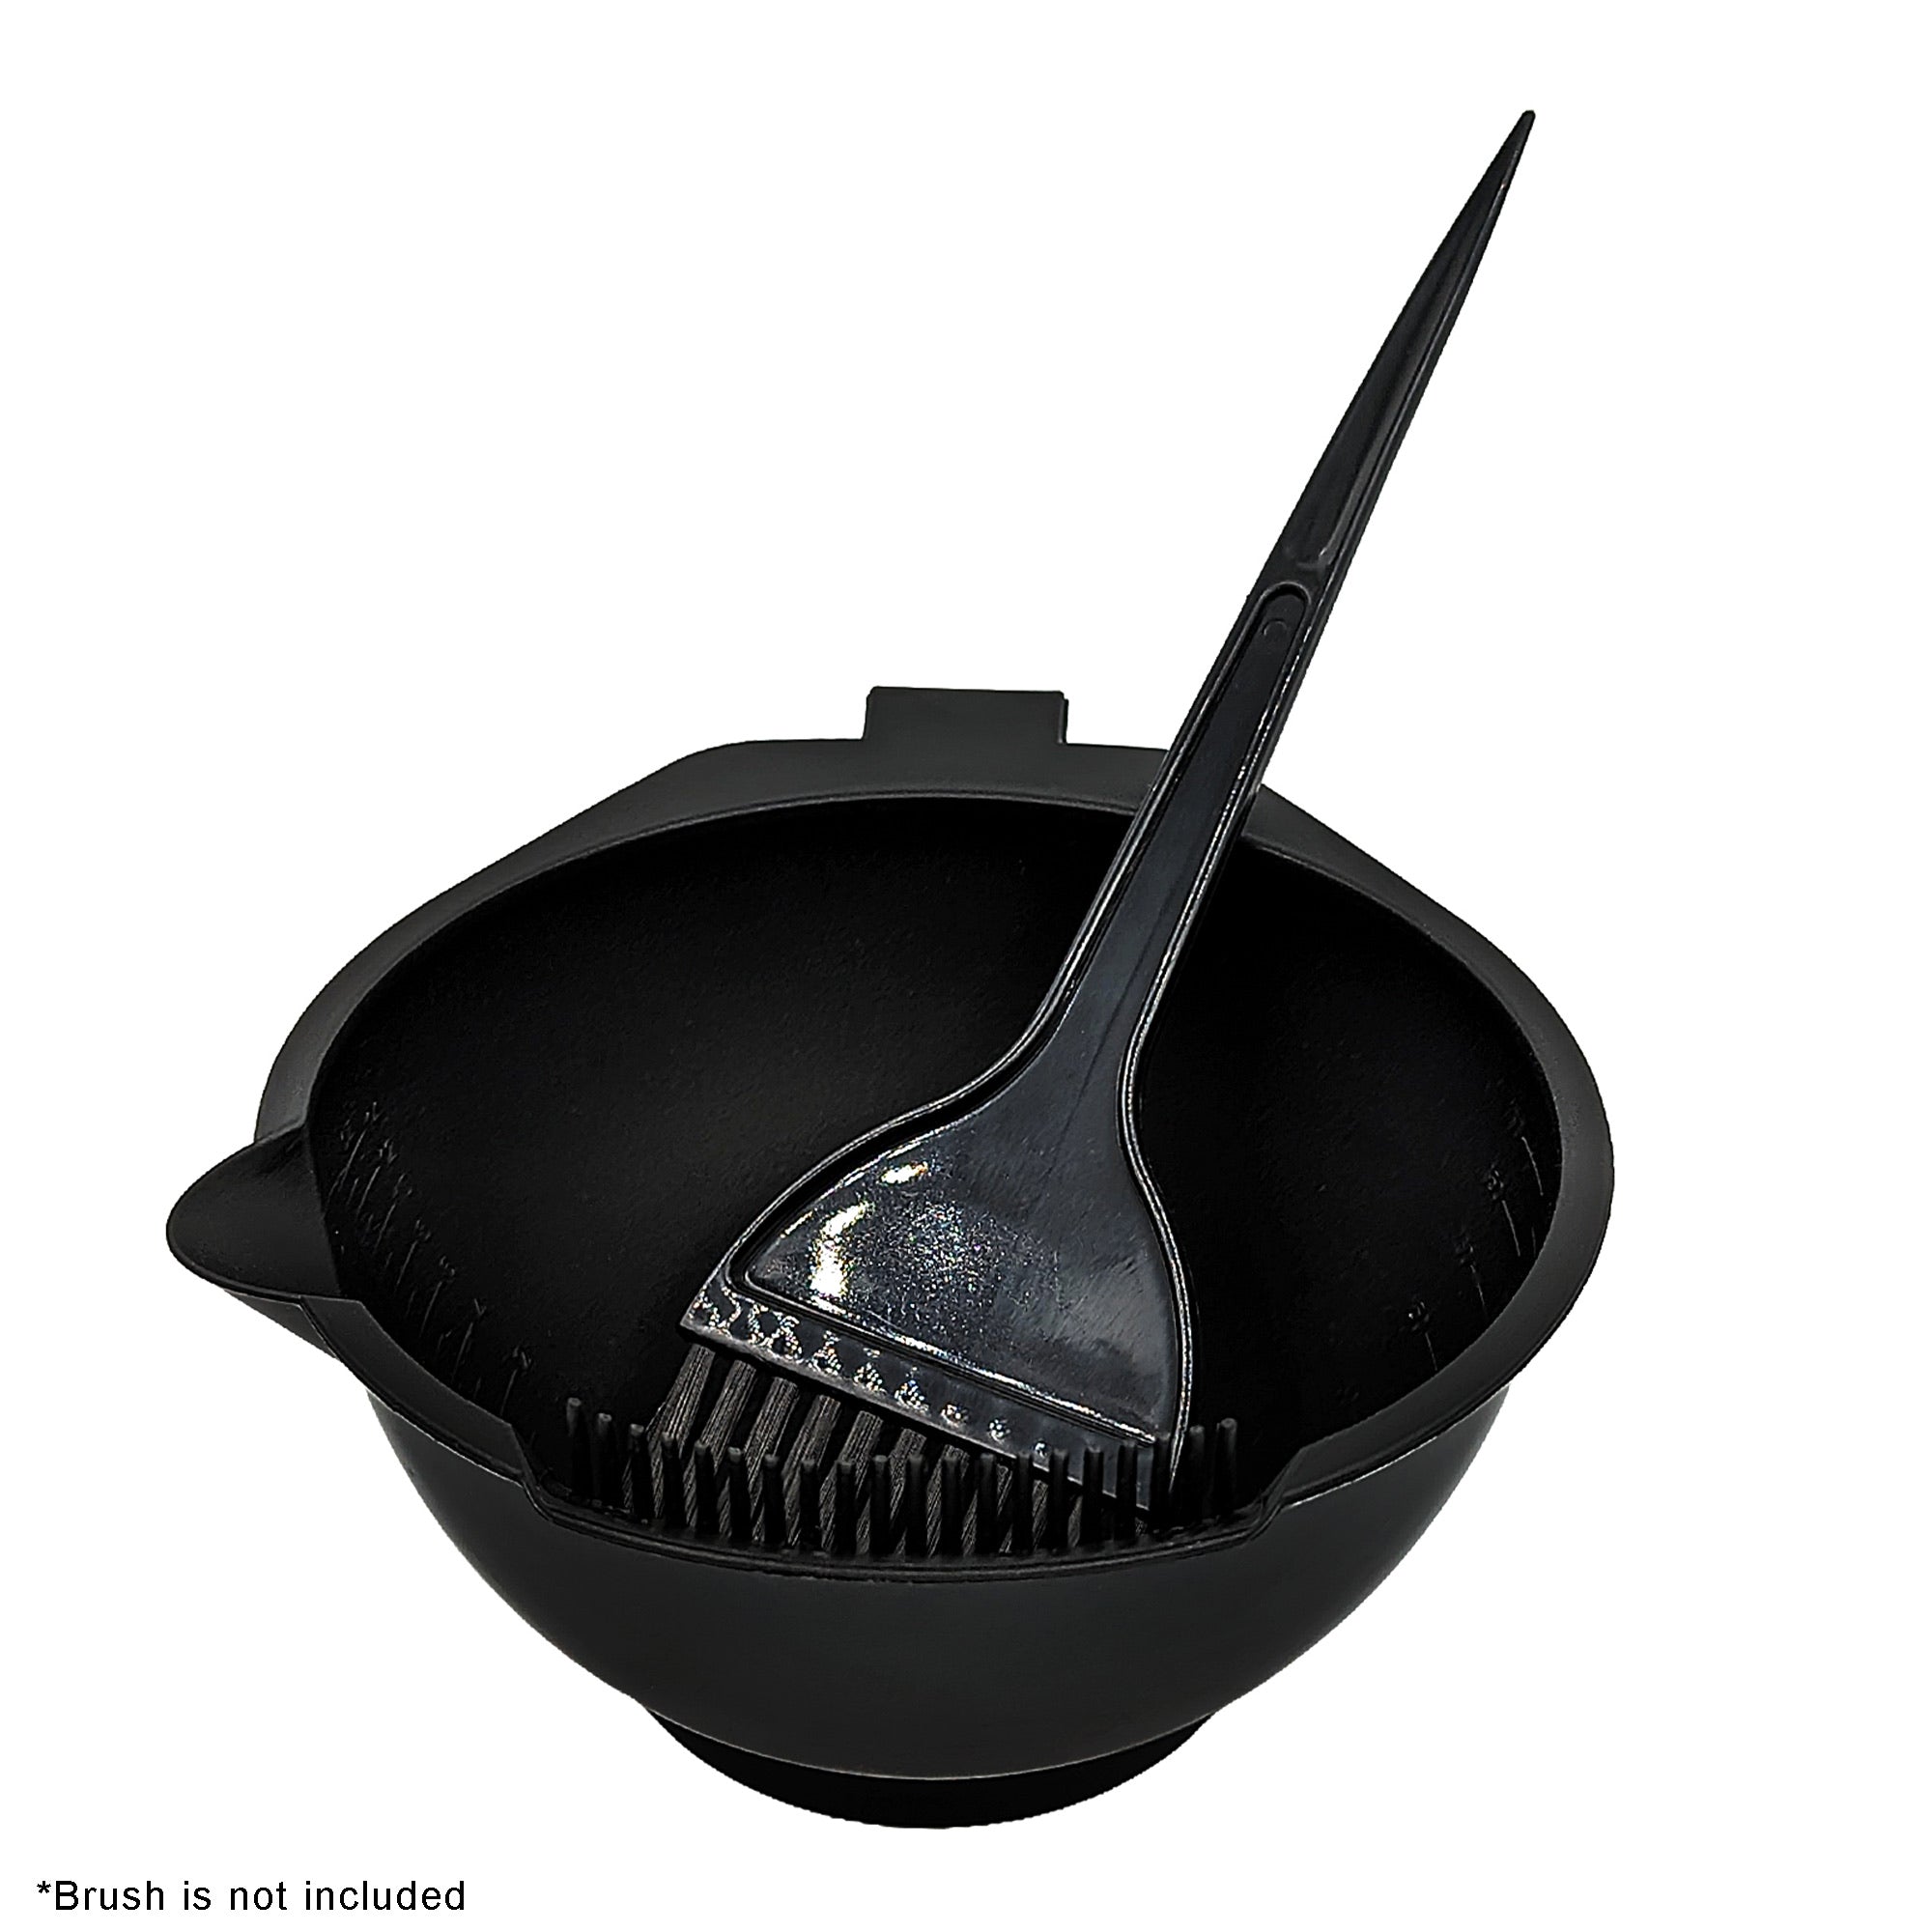 Eson - Hair Colour Mixing Bowl Pour-Spout Handle With Measurements (Black)